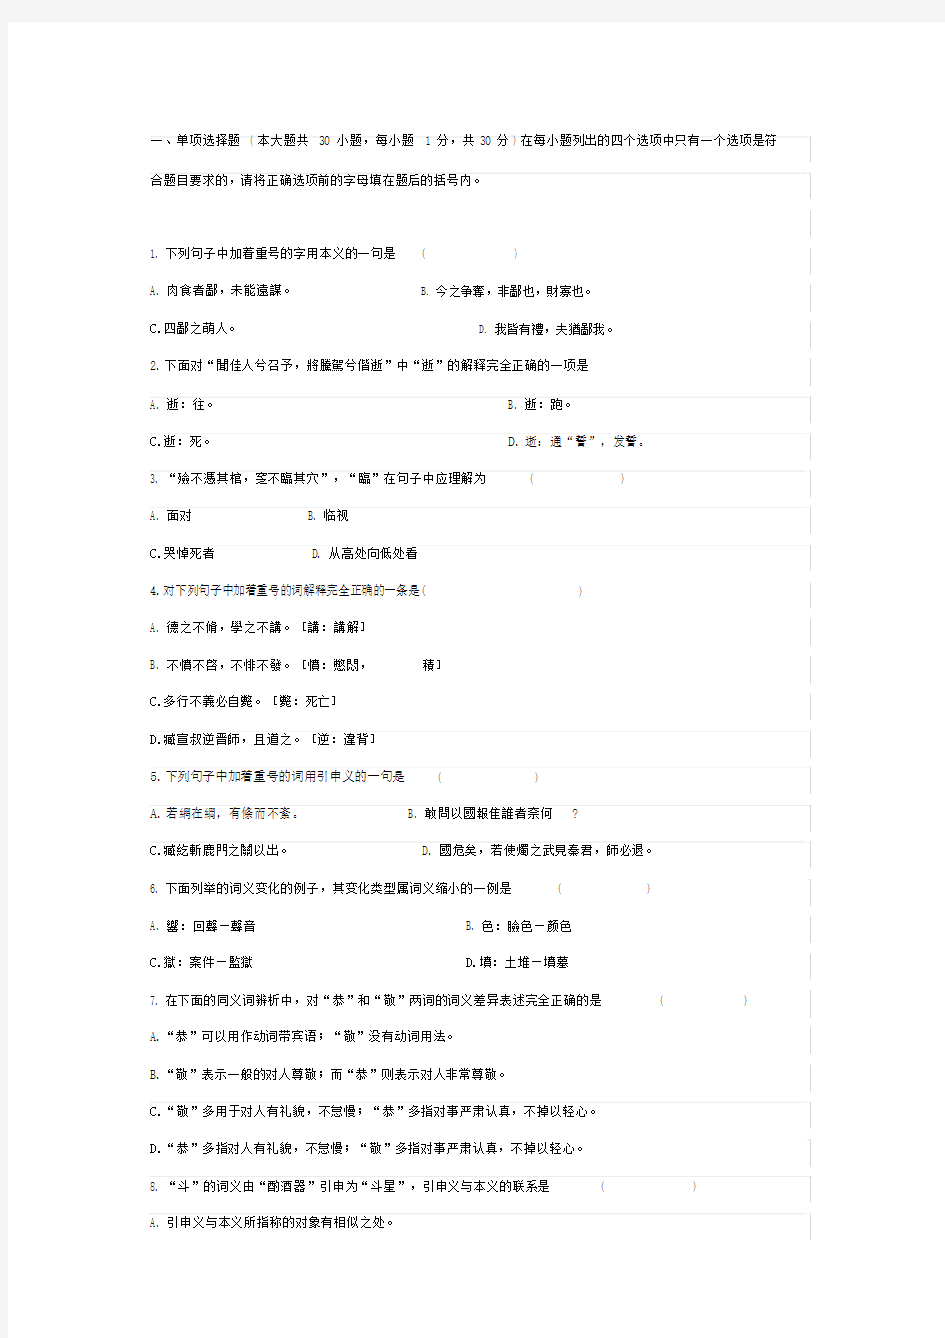 古代汉语试卷习题及标准标准答案.doc